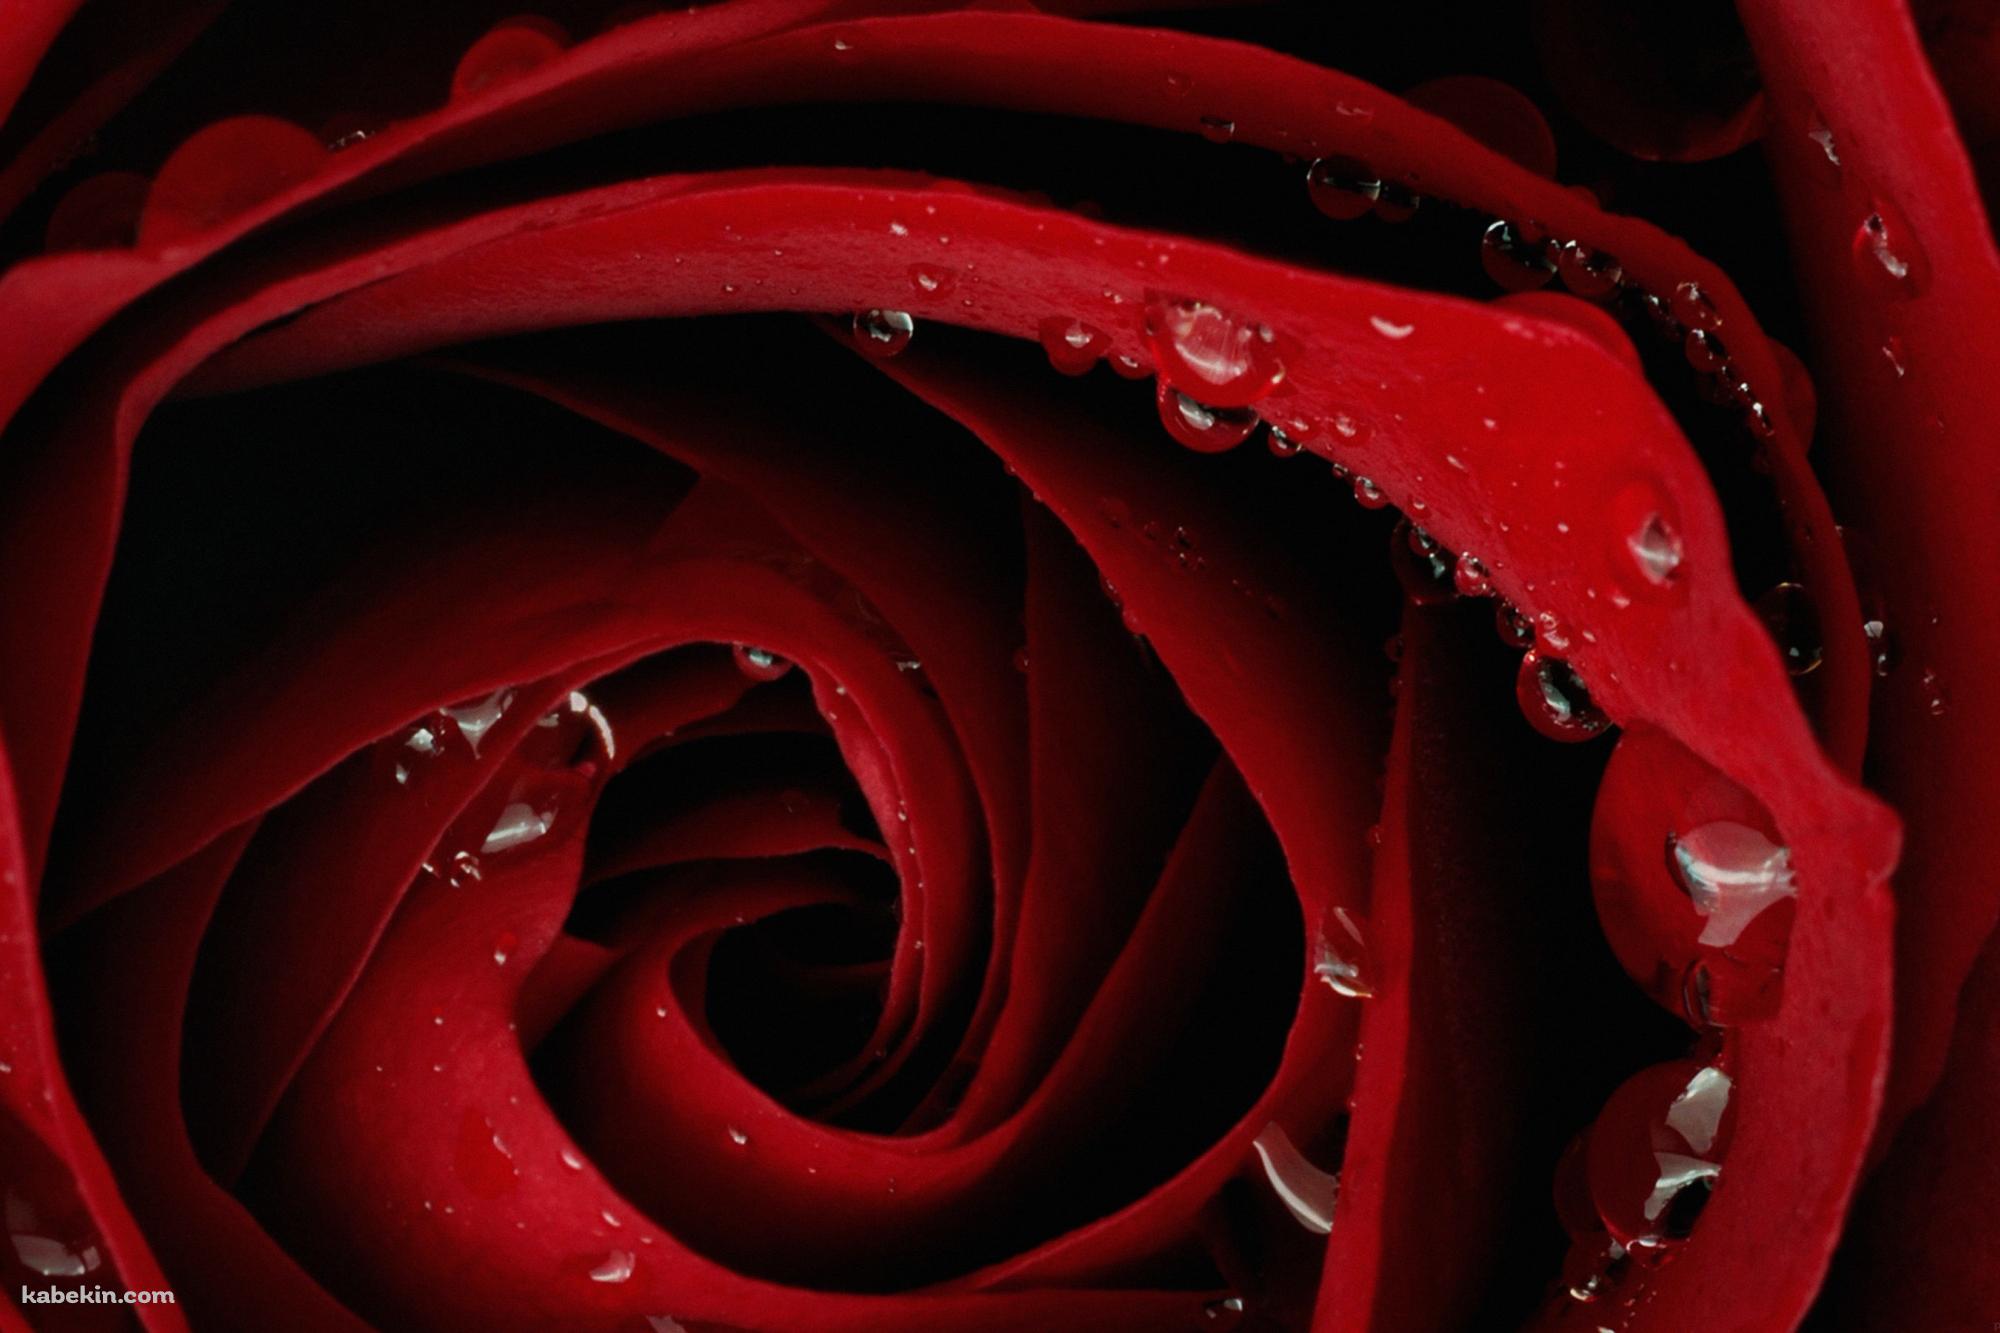 赤い薔薇の壁紙(2000px x 1333px) 高画質 PC・デスクトップ用